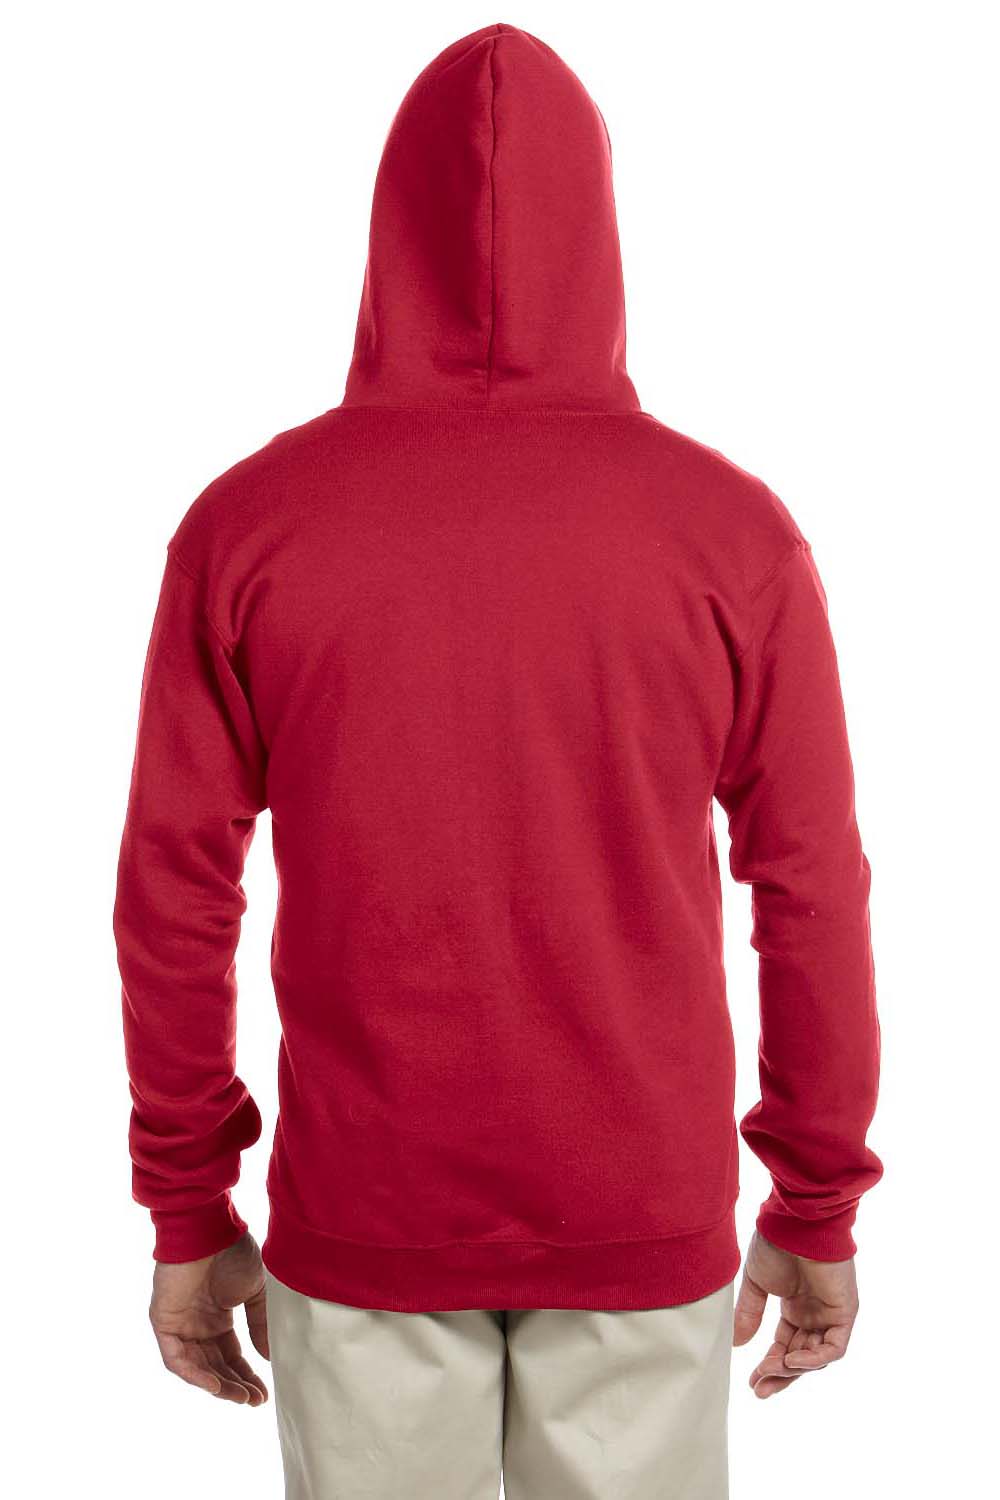 Jerzees 993 Mens NuBlend Fleece Full Zip Hooded Sweatshirt Hoodie Red Back